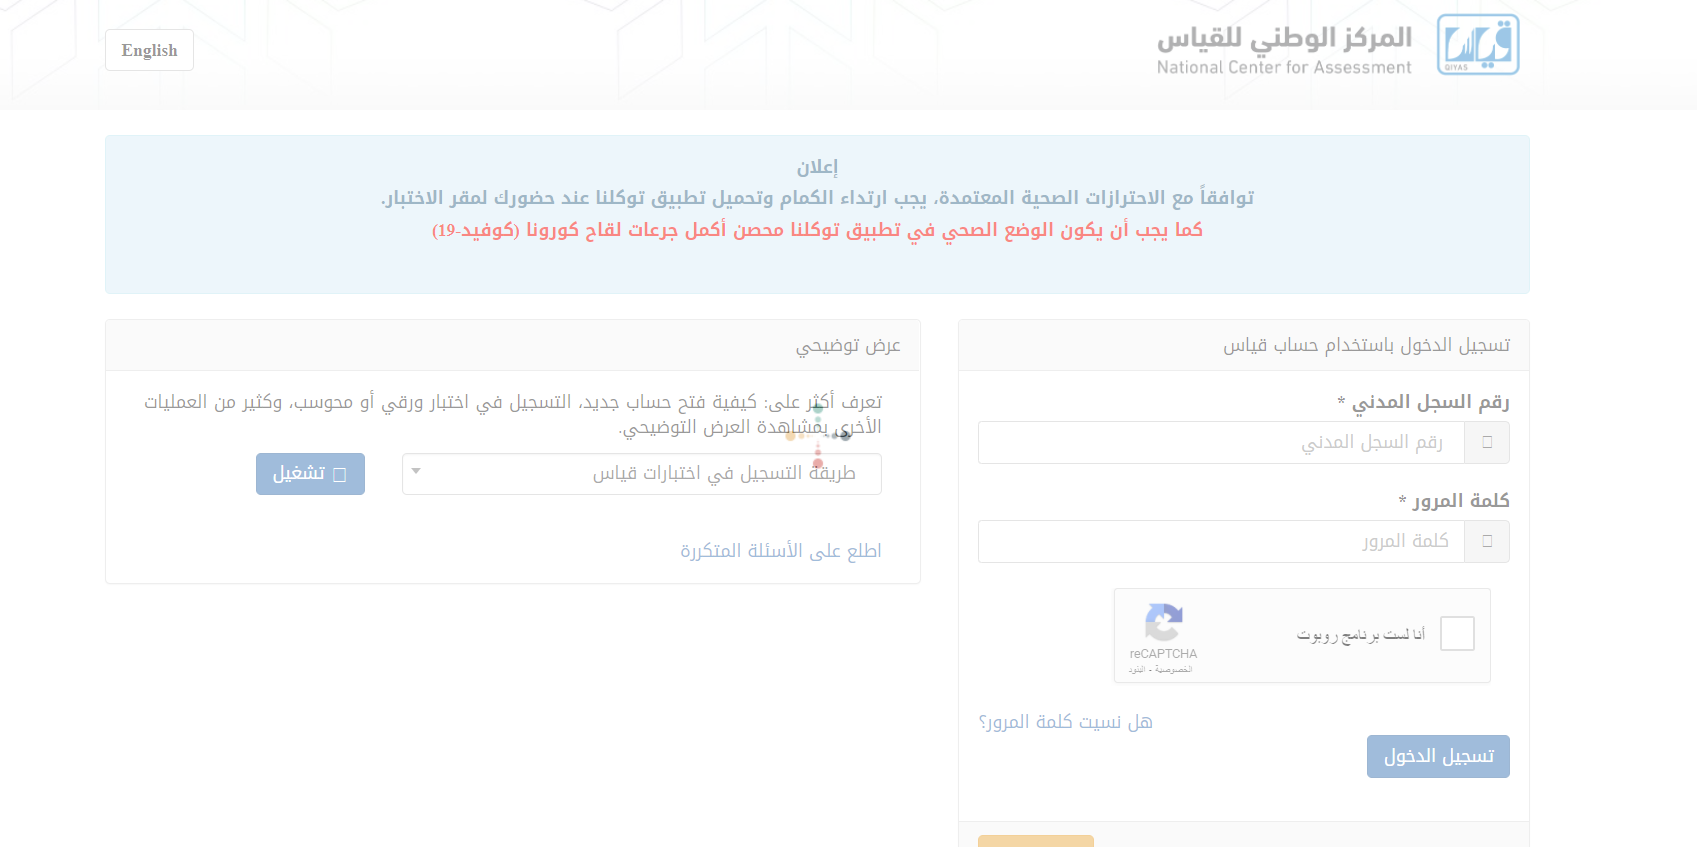 نتائج قياس 1443 "ظهرت الآن" على موقع المركز الوطني لجميع الطلاب في السعودية